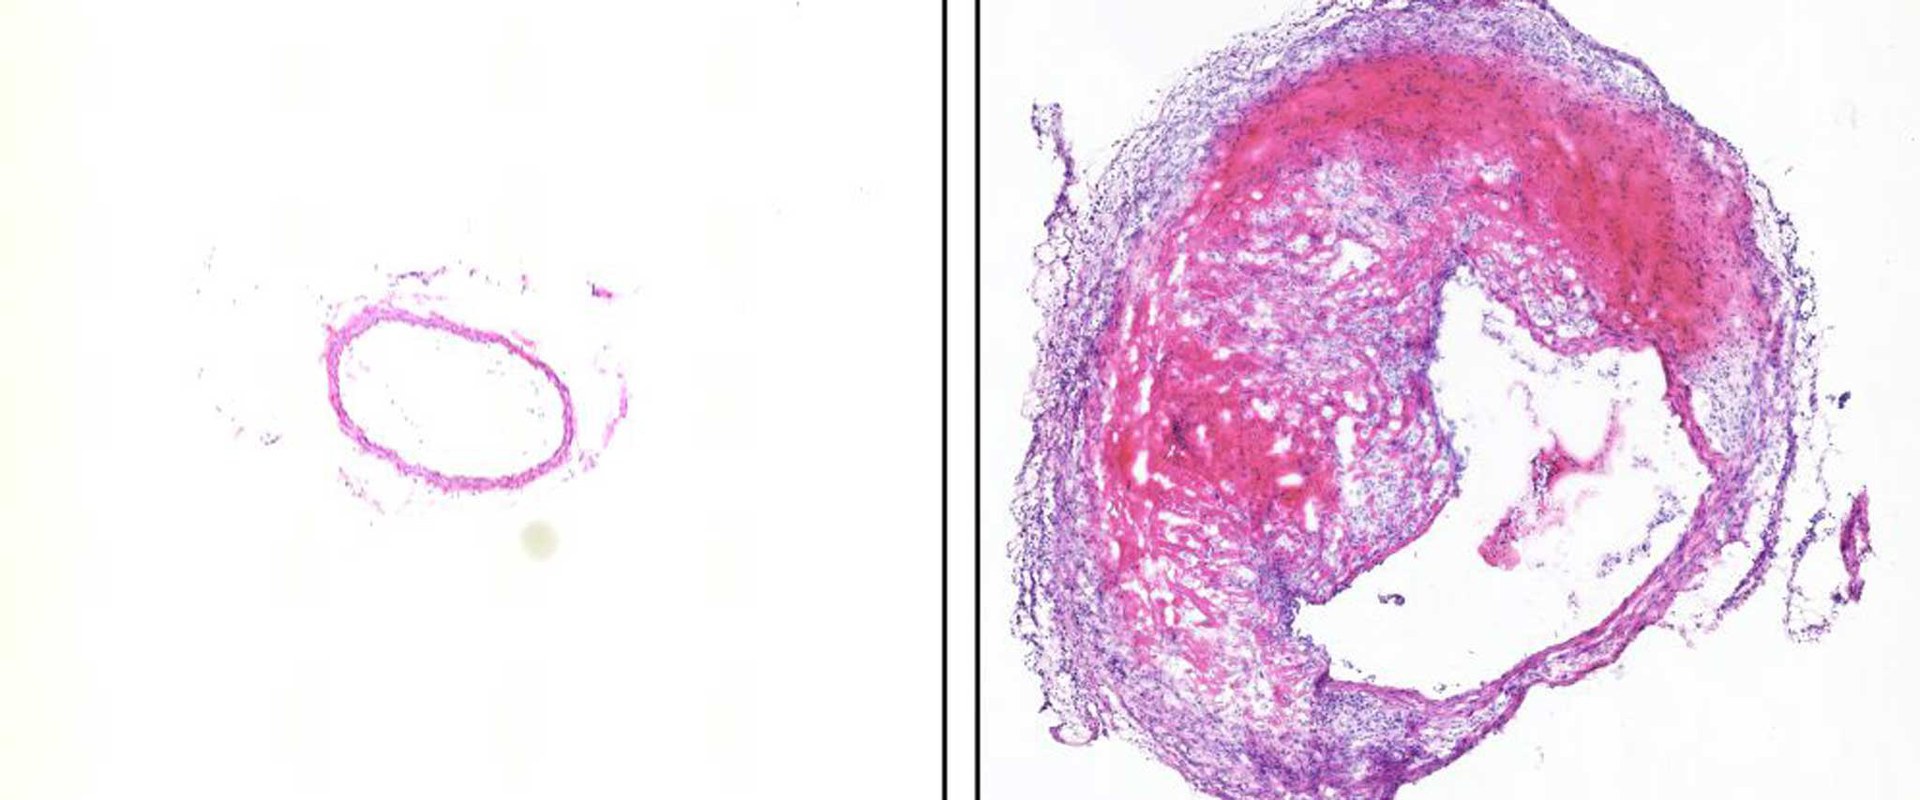 Hämatoxylin- und Eosin-Färbung von Querschnitten der Bauchaorta aus der Maus